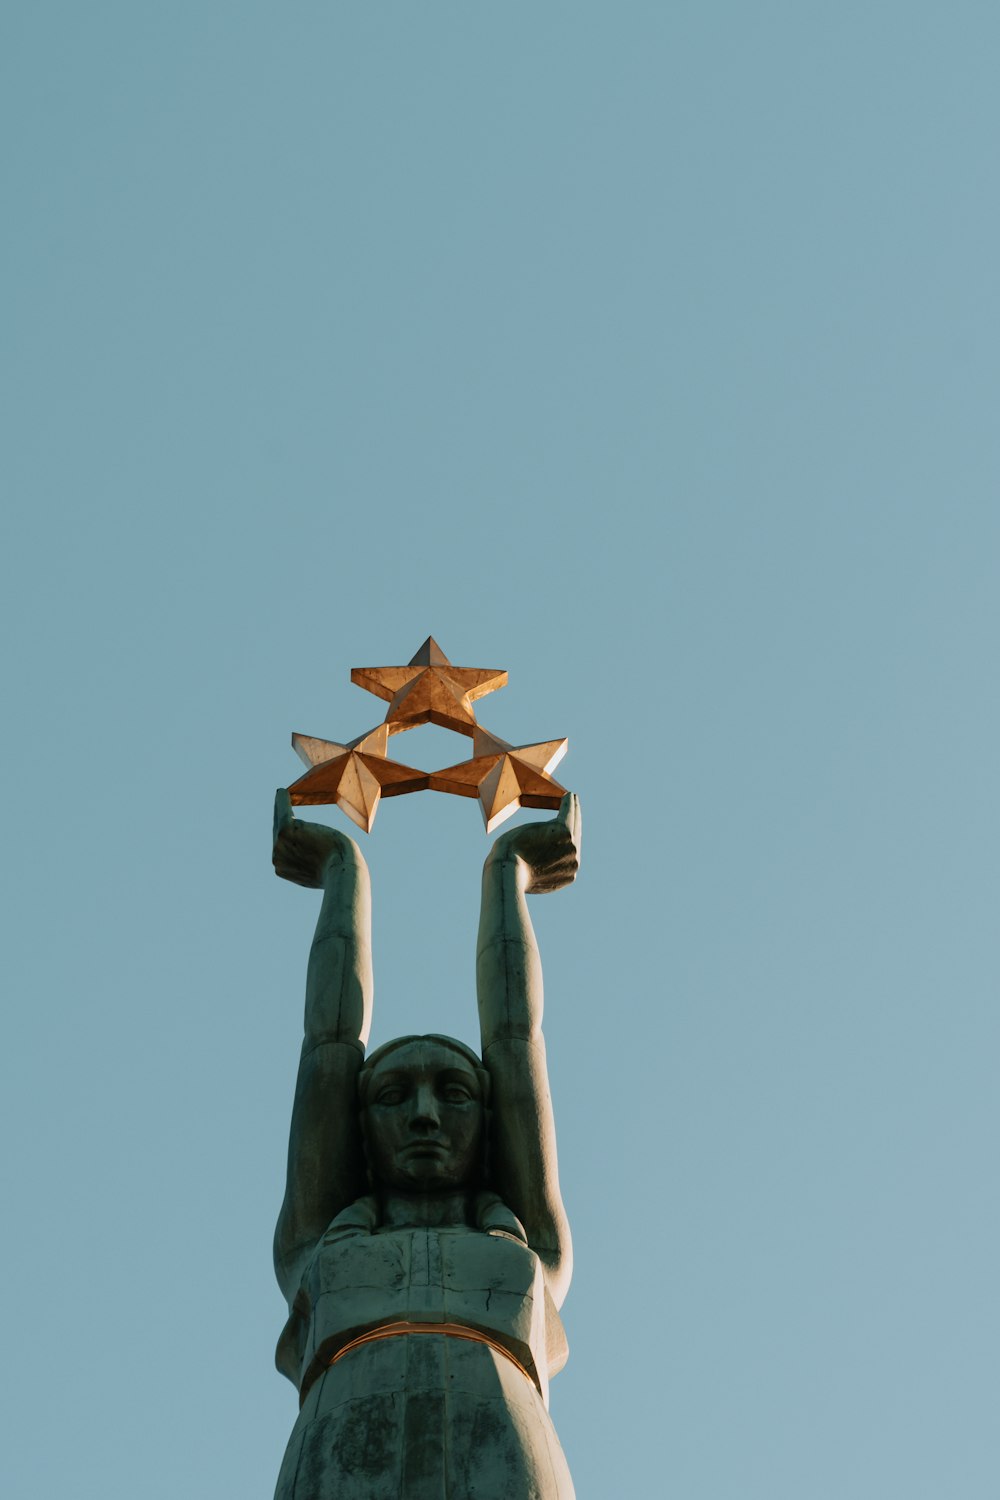 Estatua de hormigón marrón bajo el cielo azul durante el día